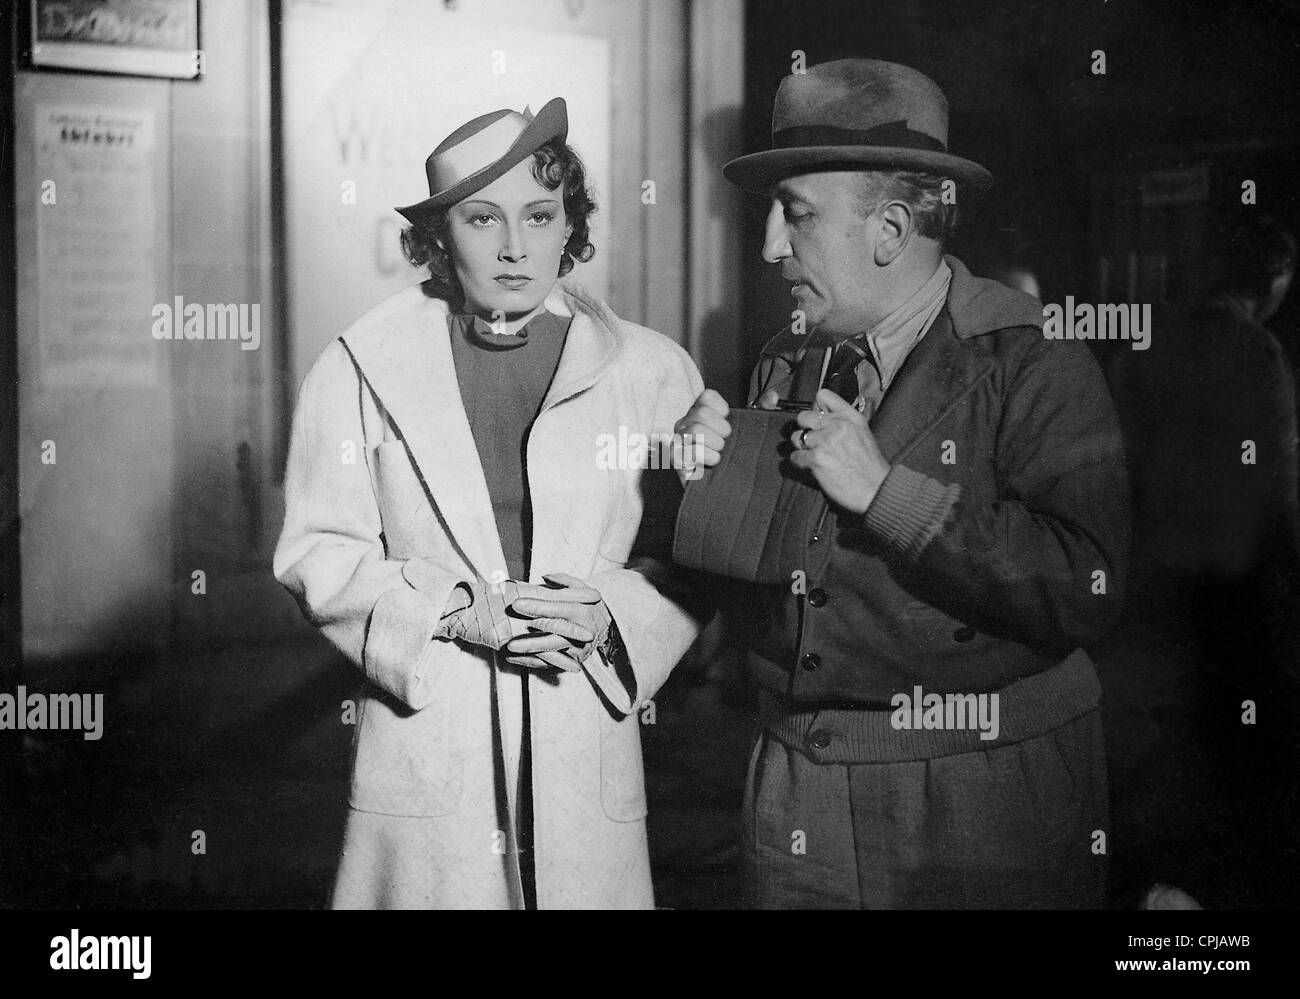 Lida Baarova et Karl Ritter au tournage de "le traître", 1936 Banque D'Images